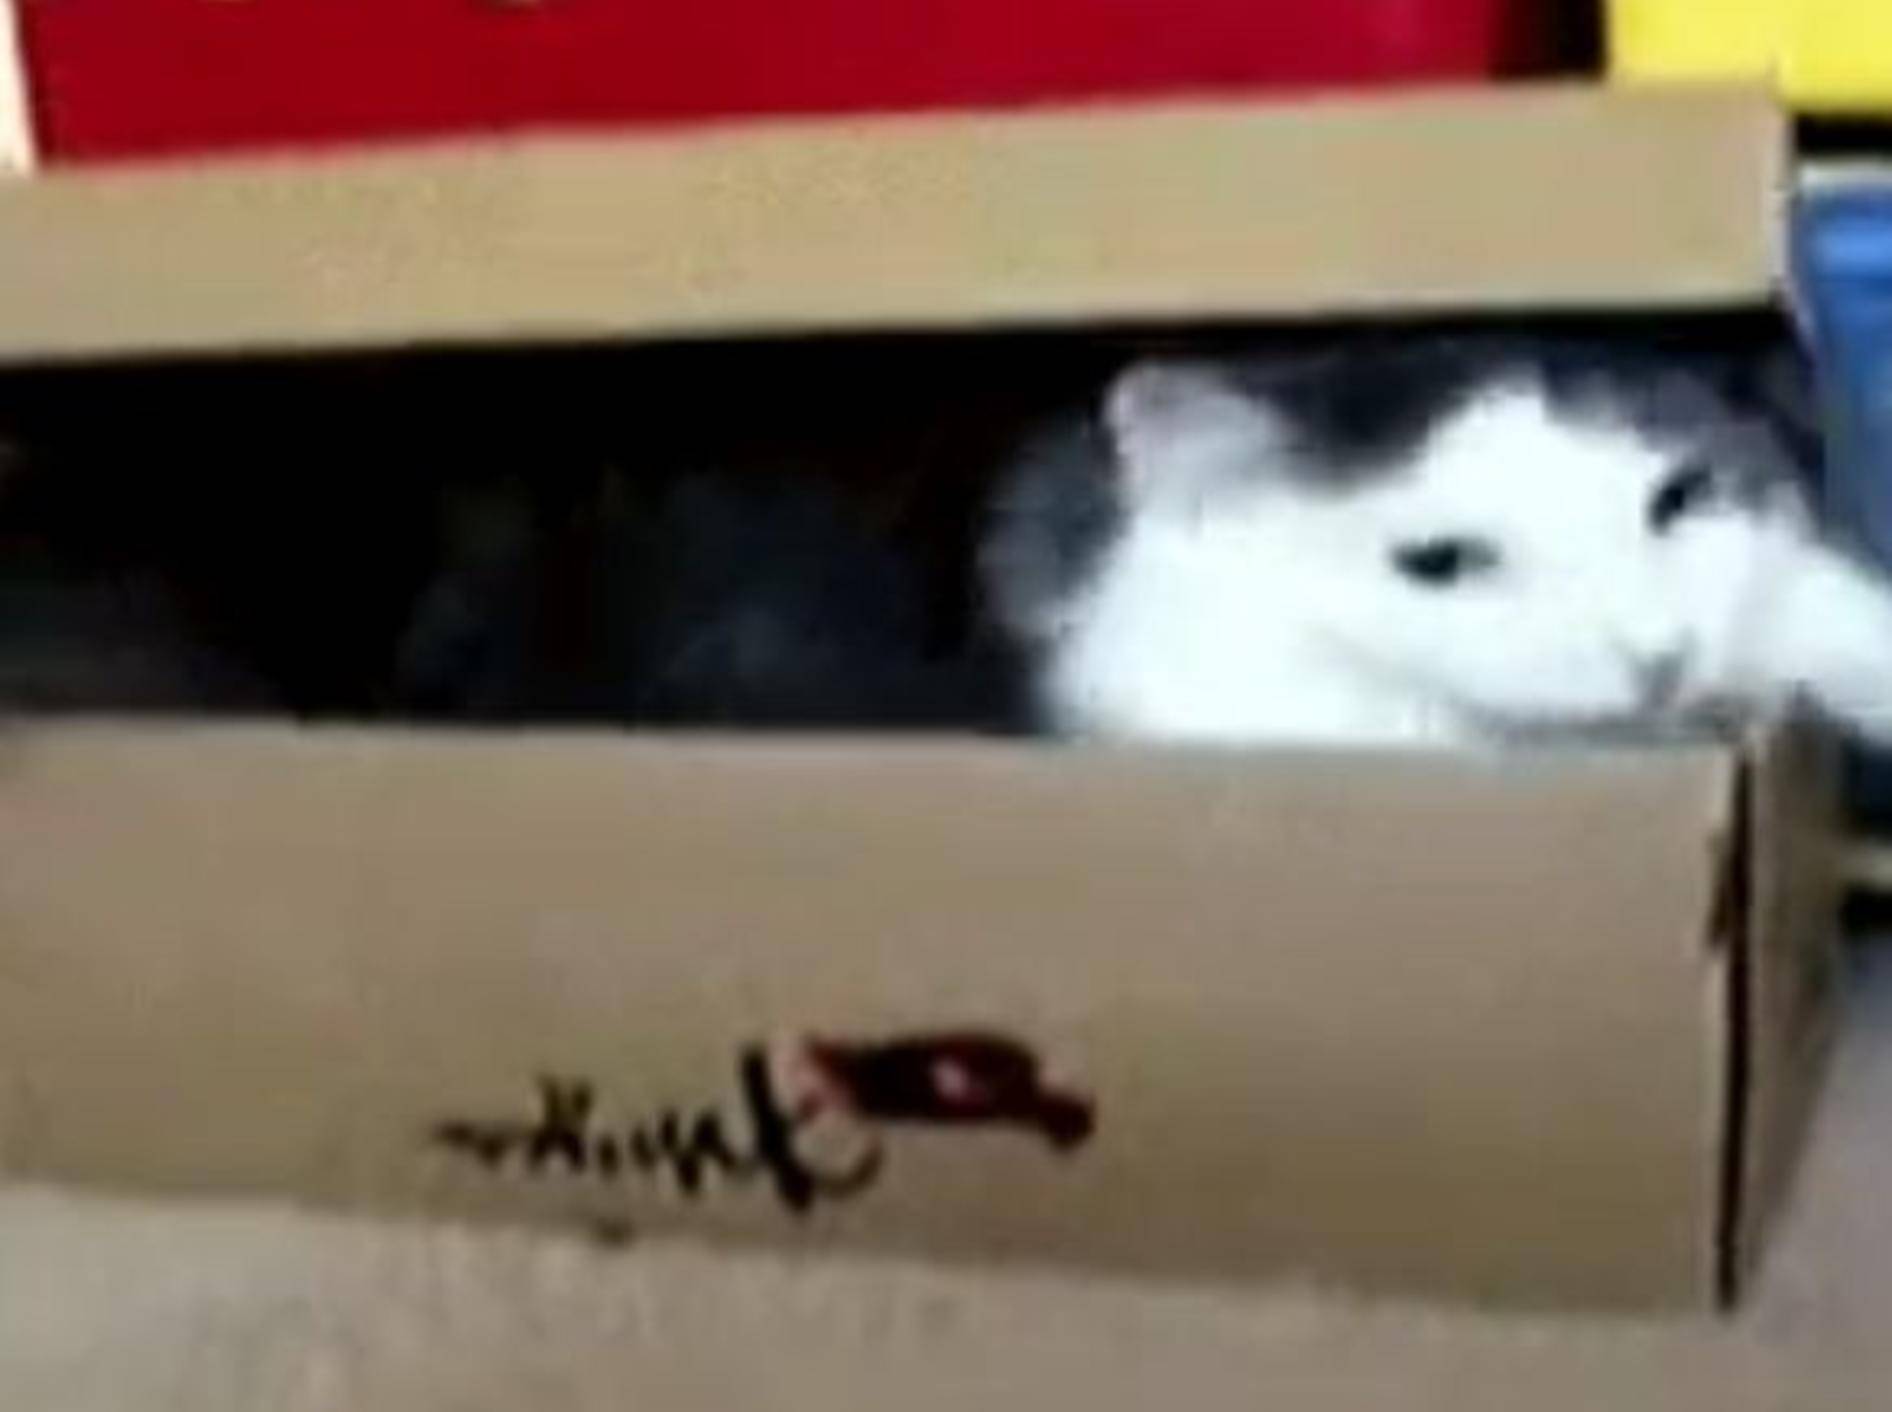 Katzenversteck-Profi zeigt einen Trick – Bild: Youtube / WHTSAPP VIDEOS 2014